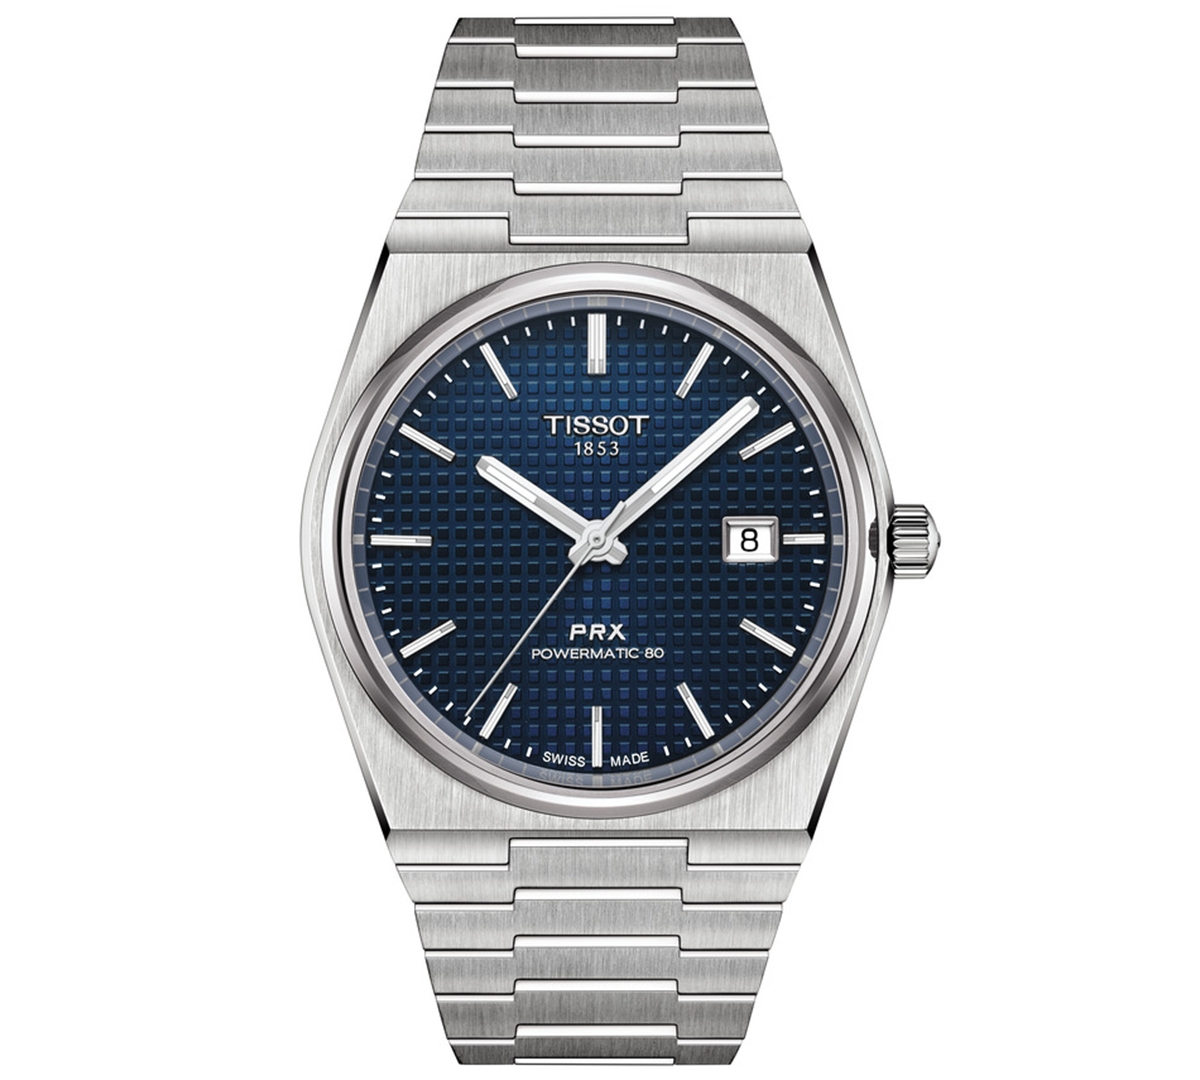 Tissot Men's Swiss Automatic Prx Powermatic 80 Stainless Steel Bracelet Watch 40mm In Blue